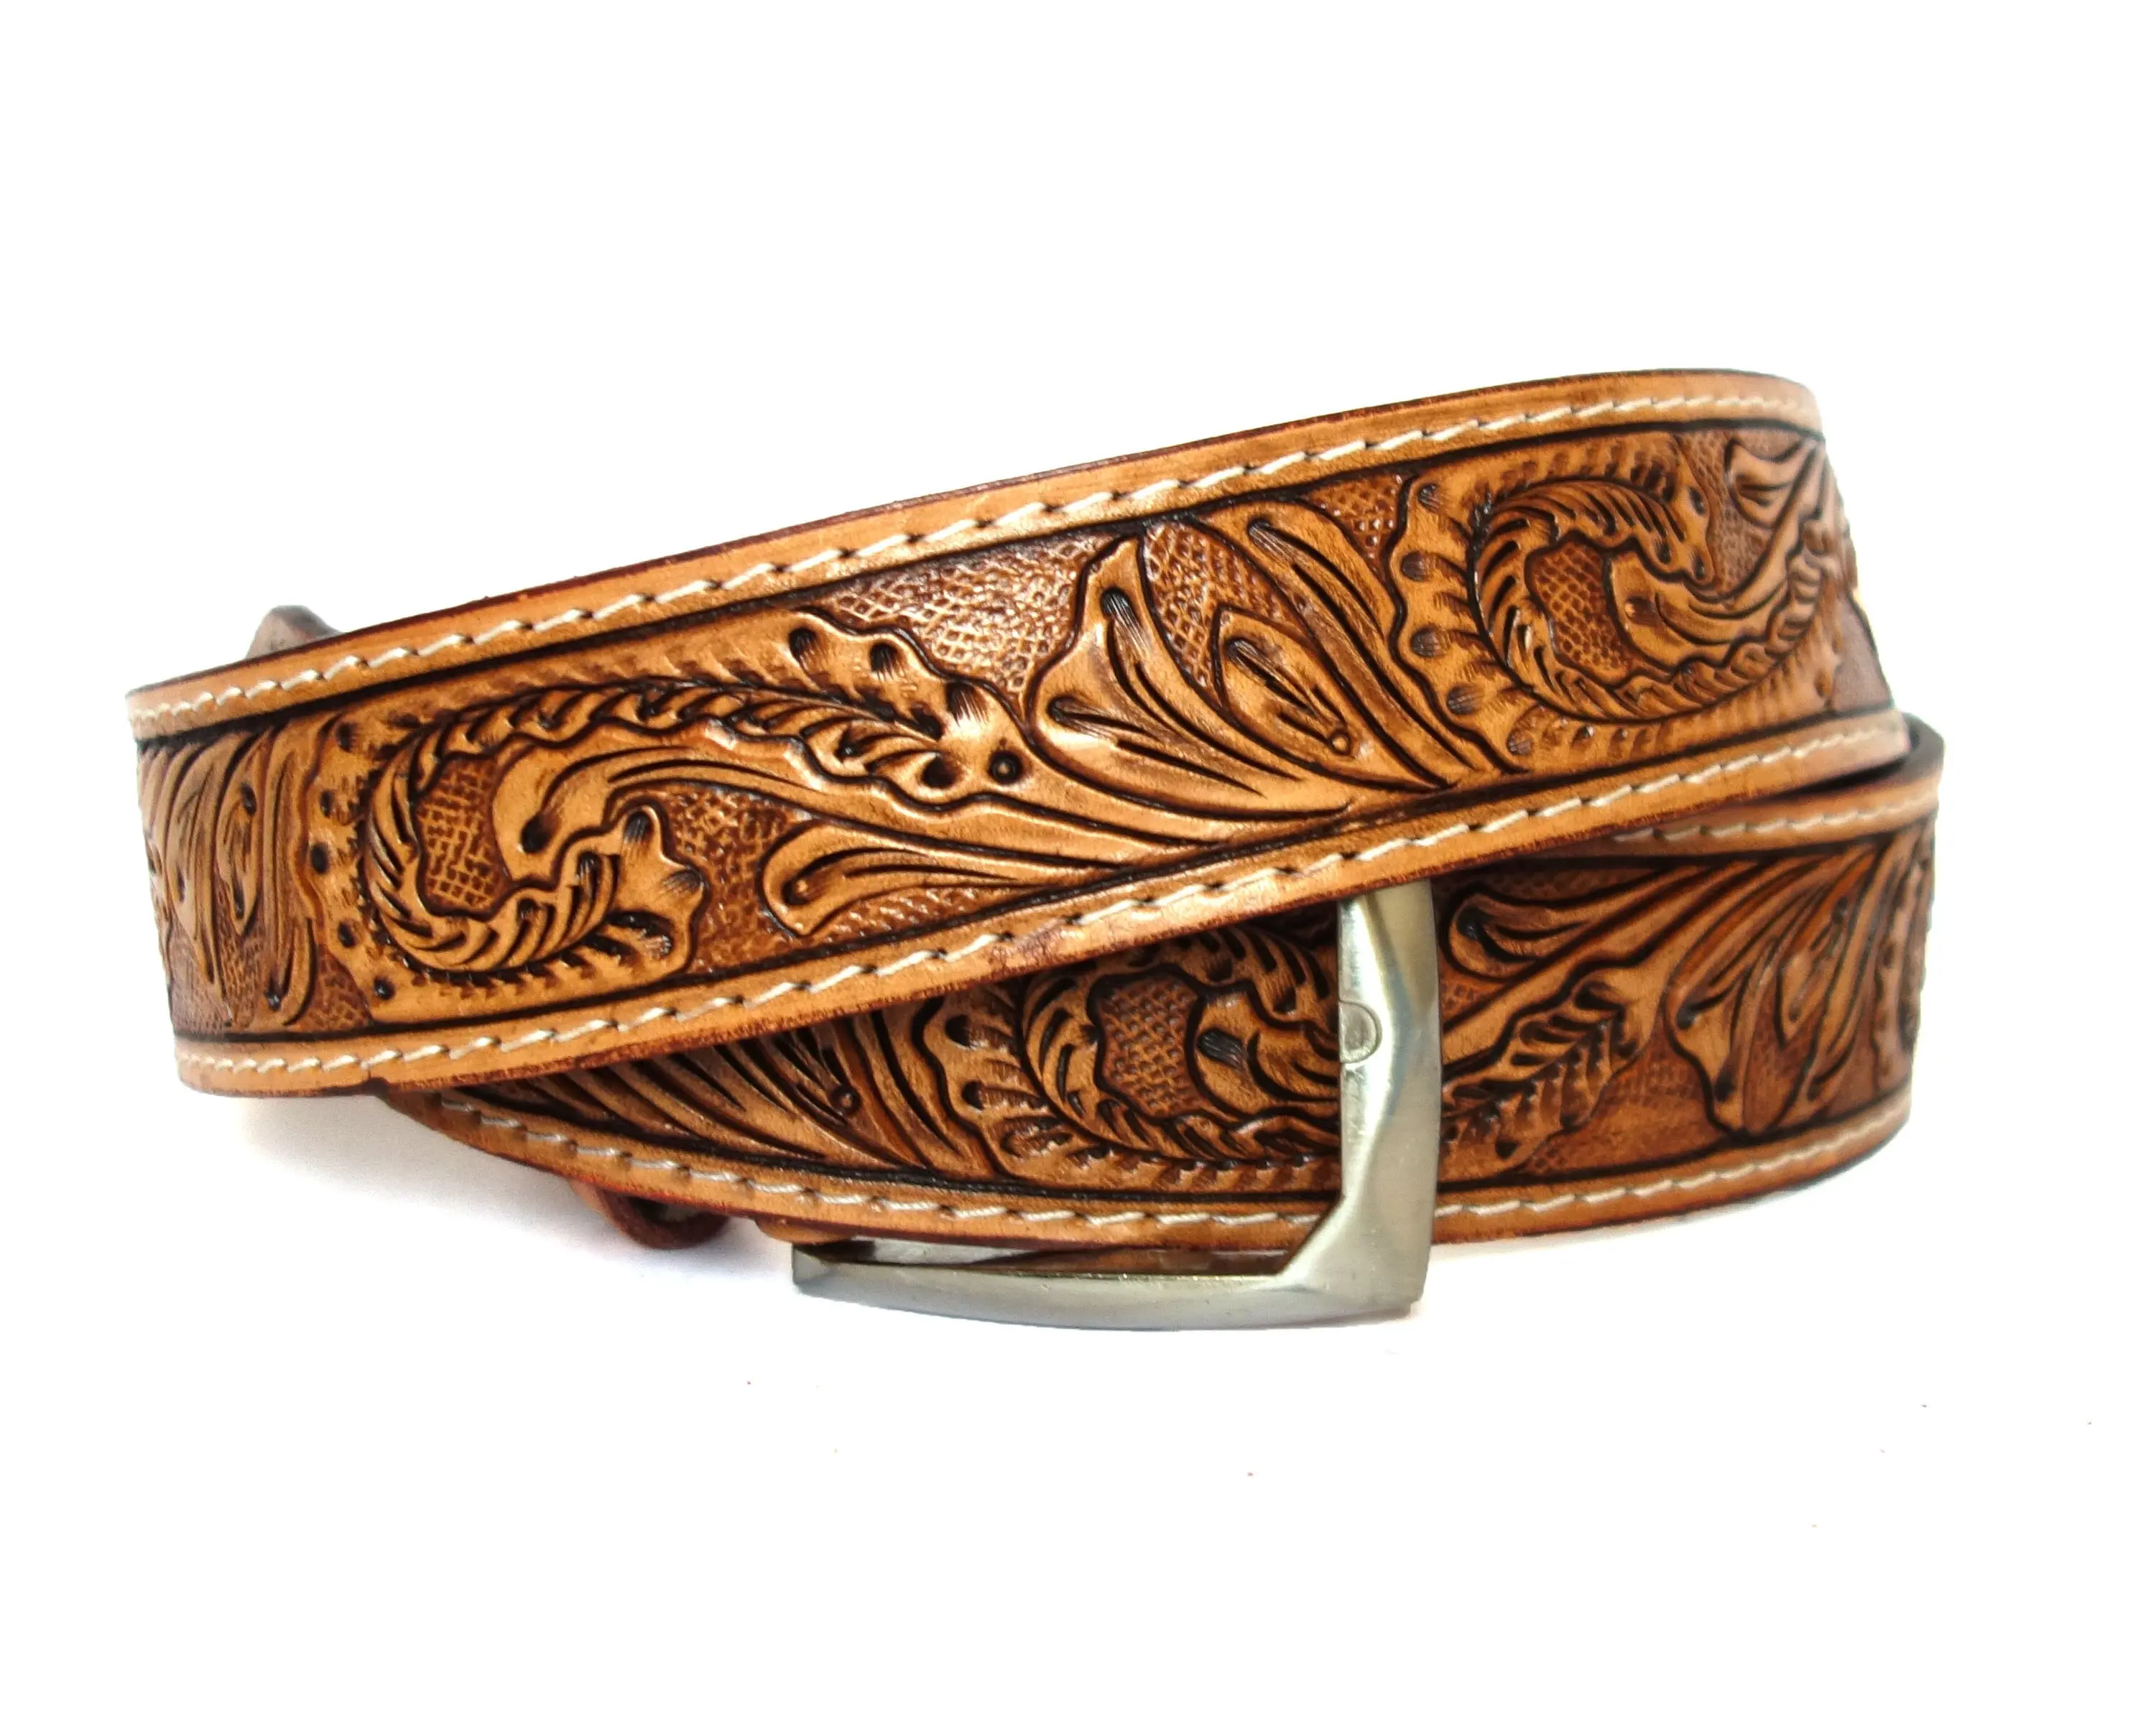 Cinturones de cuero occidental hechos a mano de último diseño, cuero de vaca para hombres y mujeres, cinturones florales de estilo occidental hechos a mano Unisex